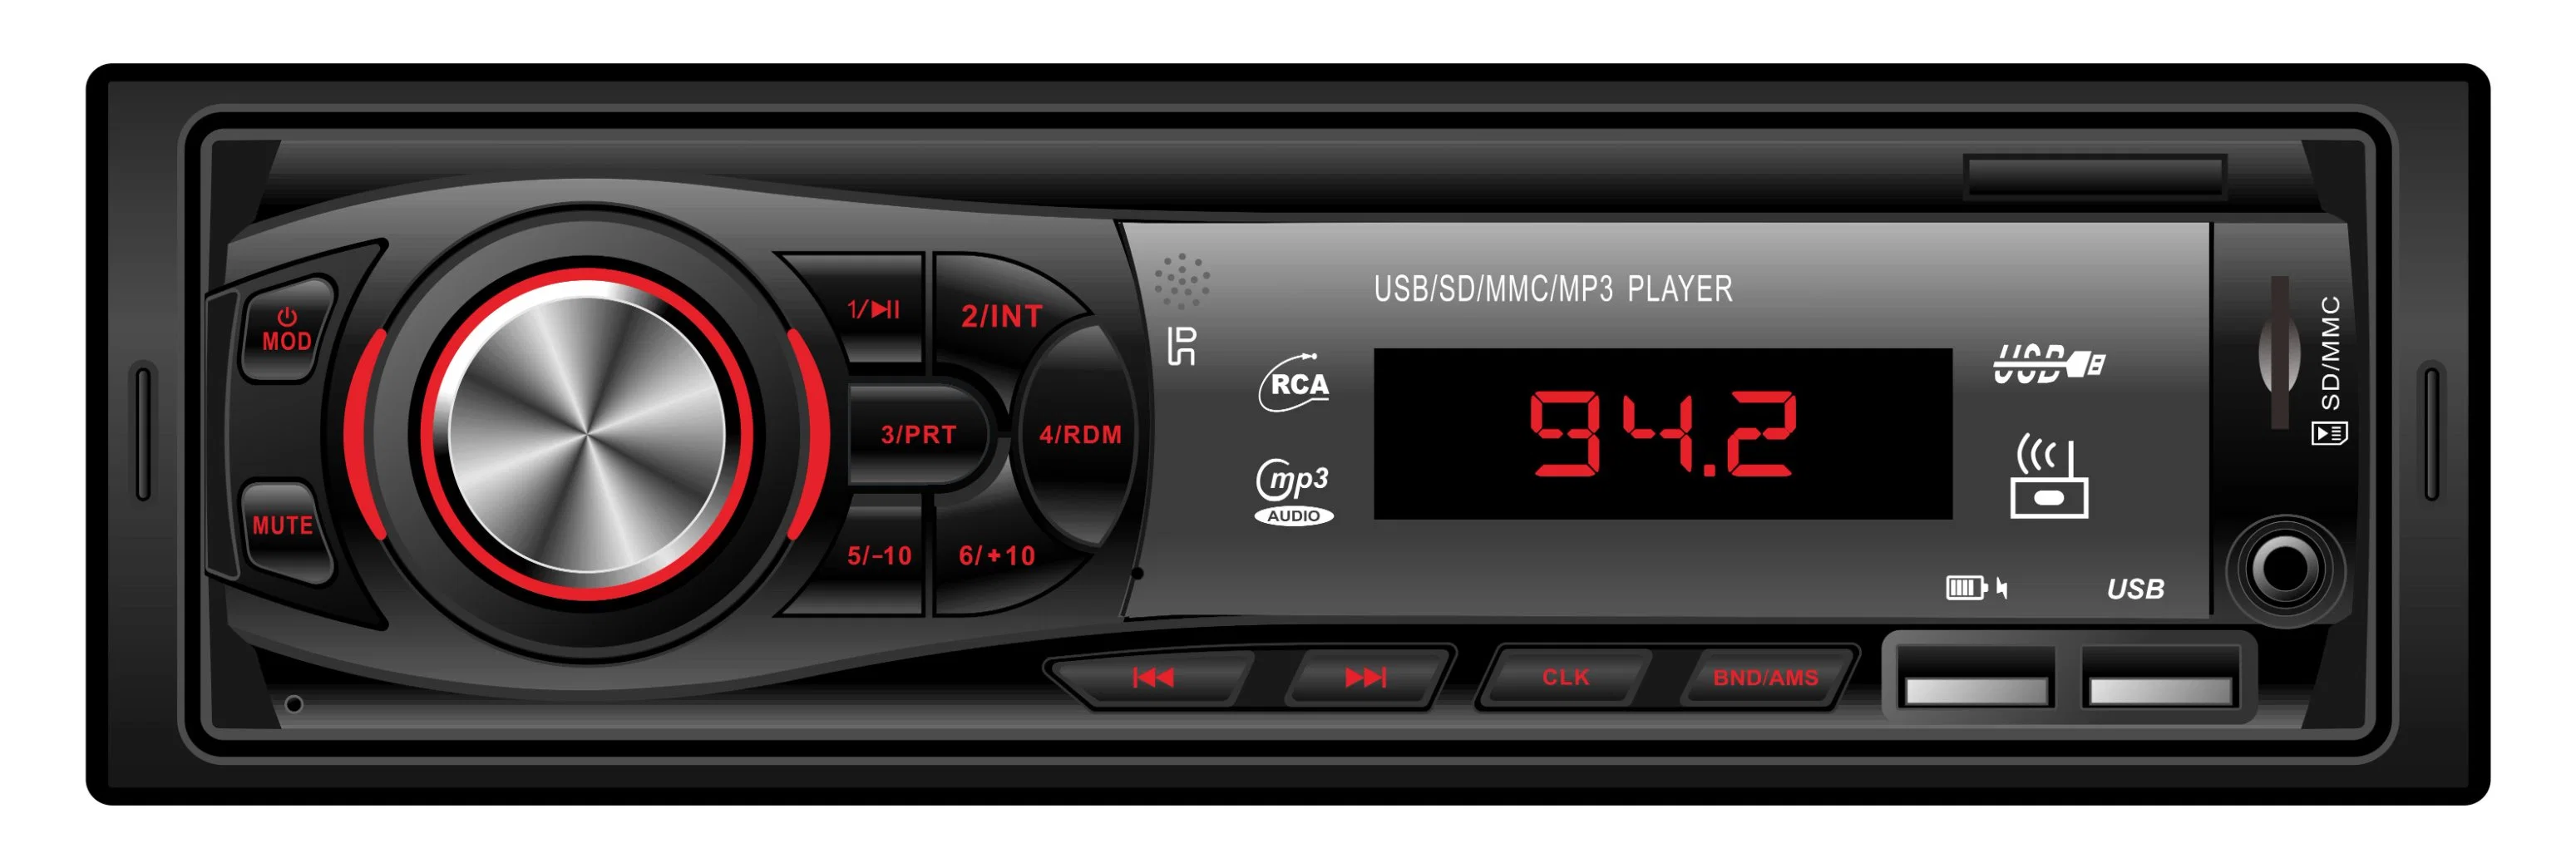 Única unidade da cabeça de automóveis DIN Multimedia player de áudio MP3